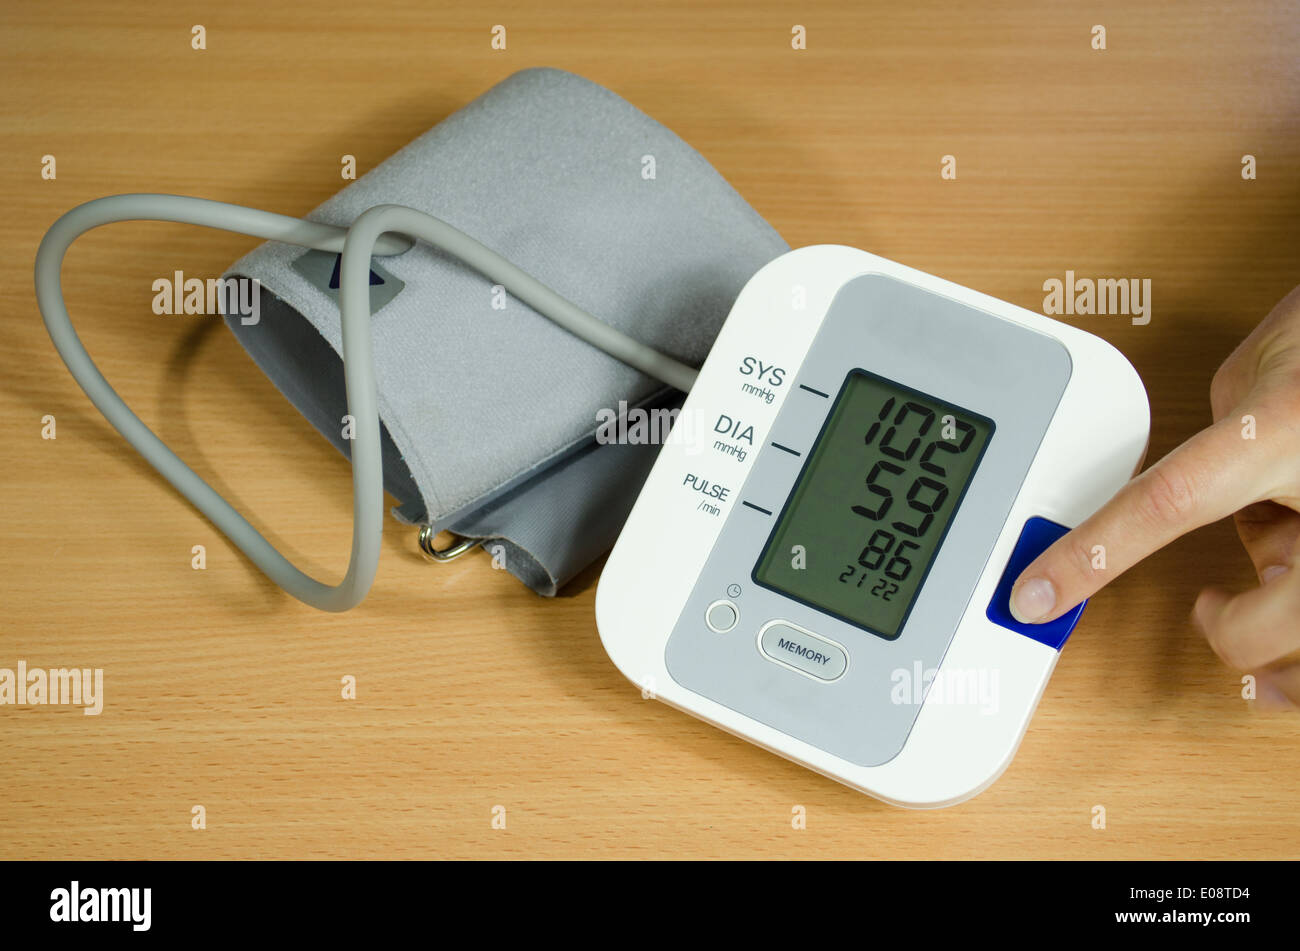 Messung von Blutdruck und weibliche Finger drückt die Schaltfläche "Start" Stockfoto